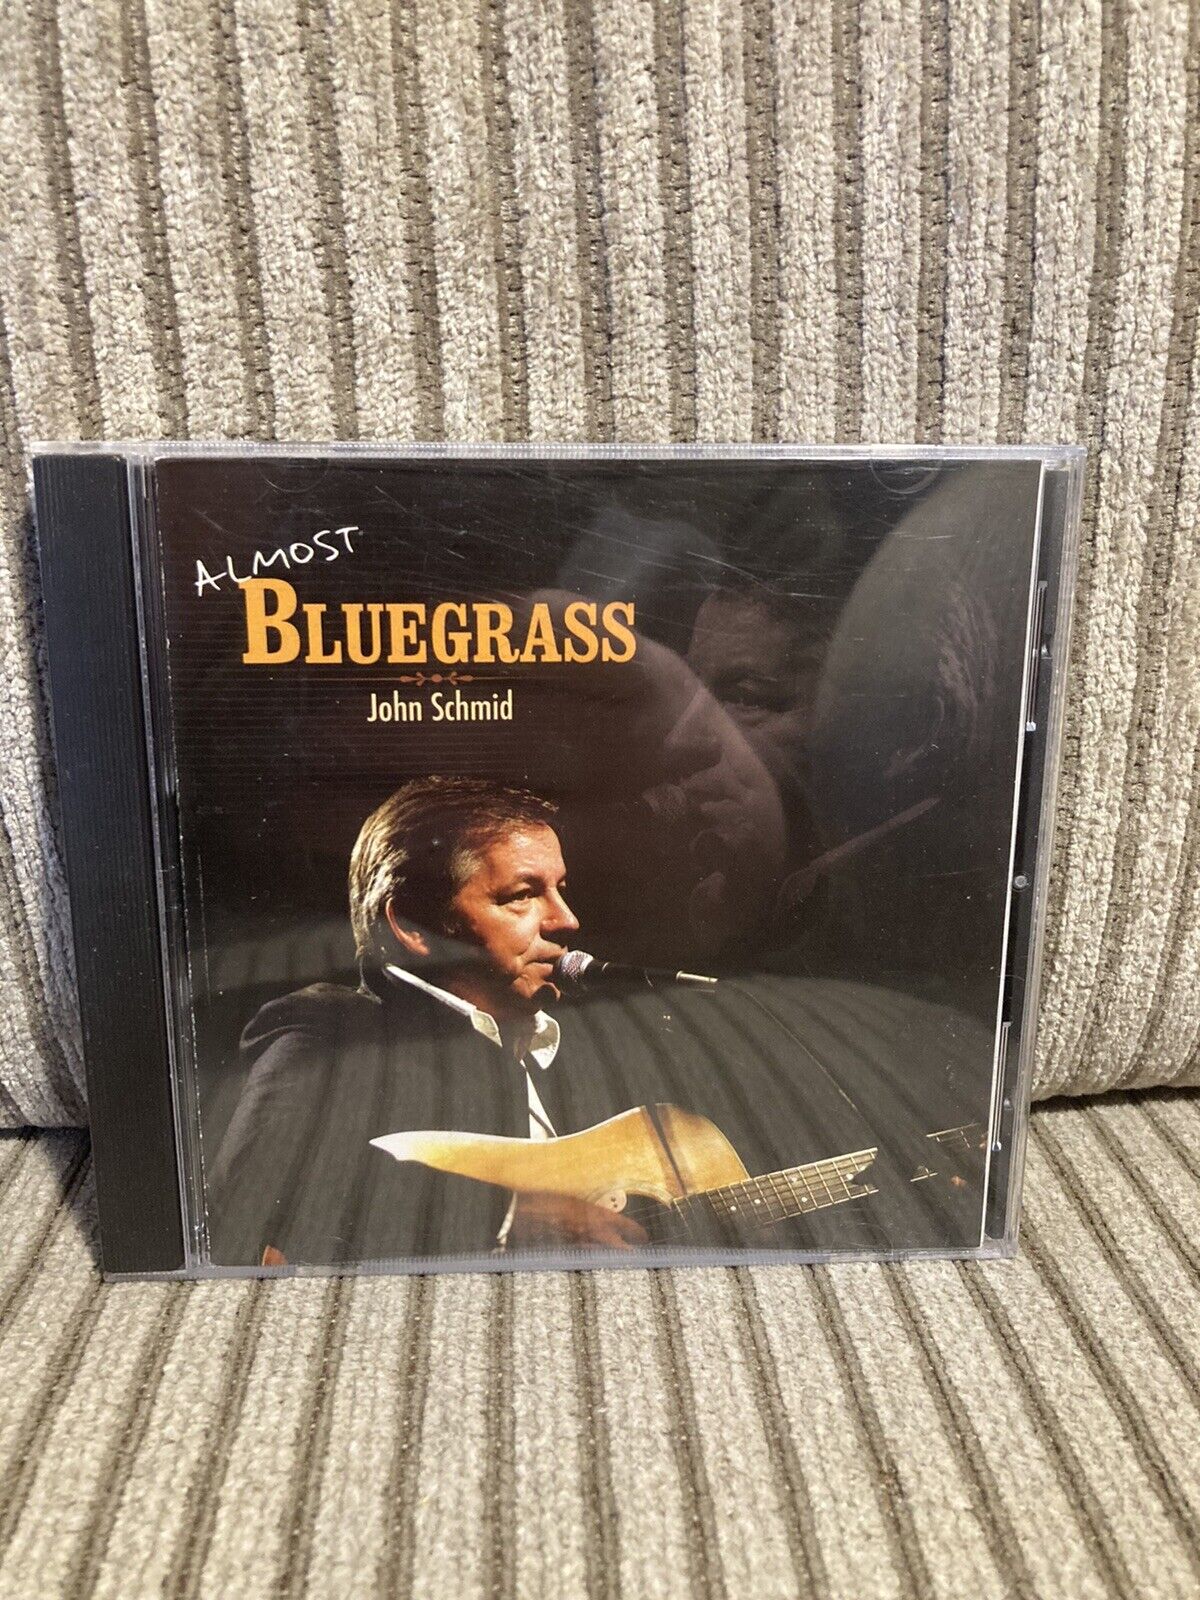 John Schmid - Almost Bluegrass CD Rare Common Ground Ministries Bluegrass 